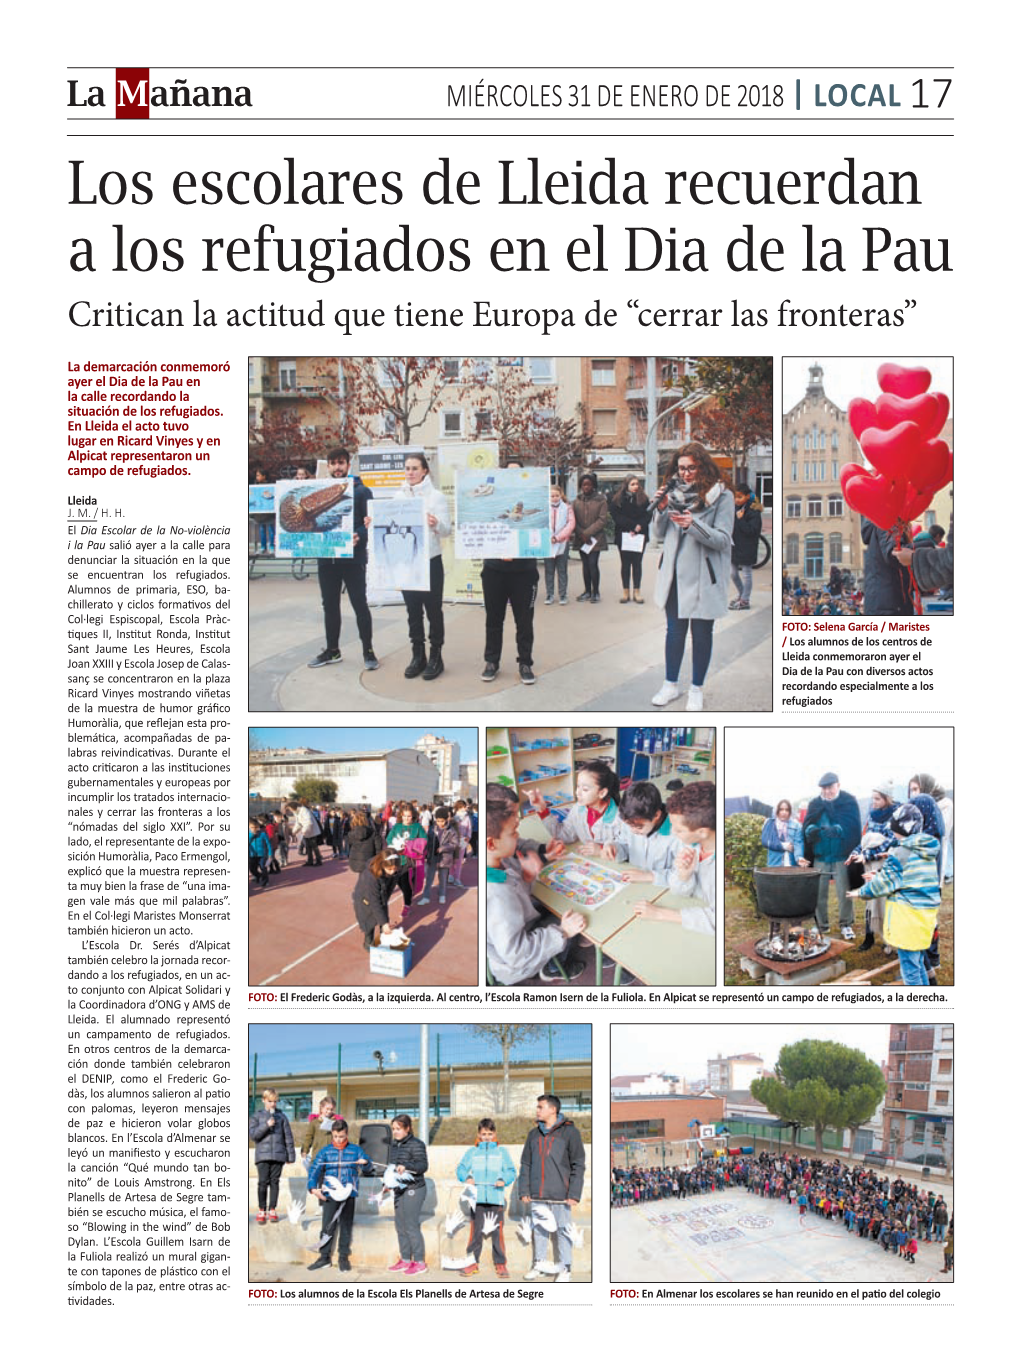 Los Escolares De Lleida Recuerdan a Los Refugiados En El Dia De La Pau Critican La Actitud Que Tiene Europa De “Cerrar Las Fronteras”